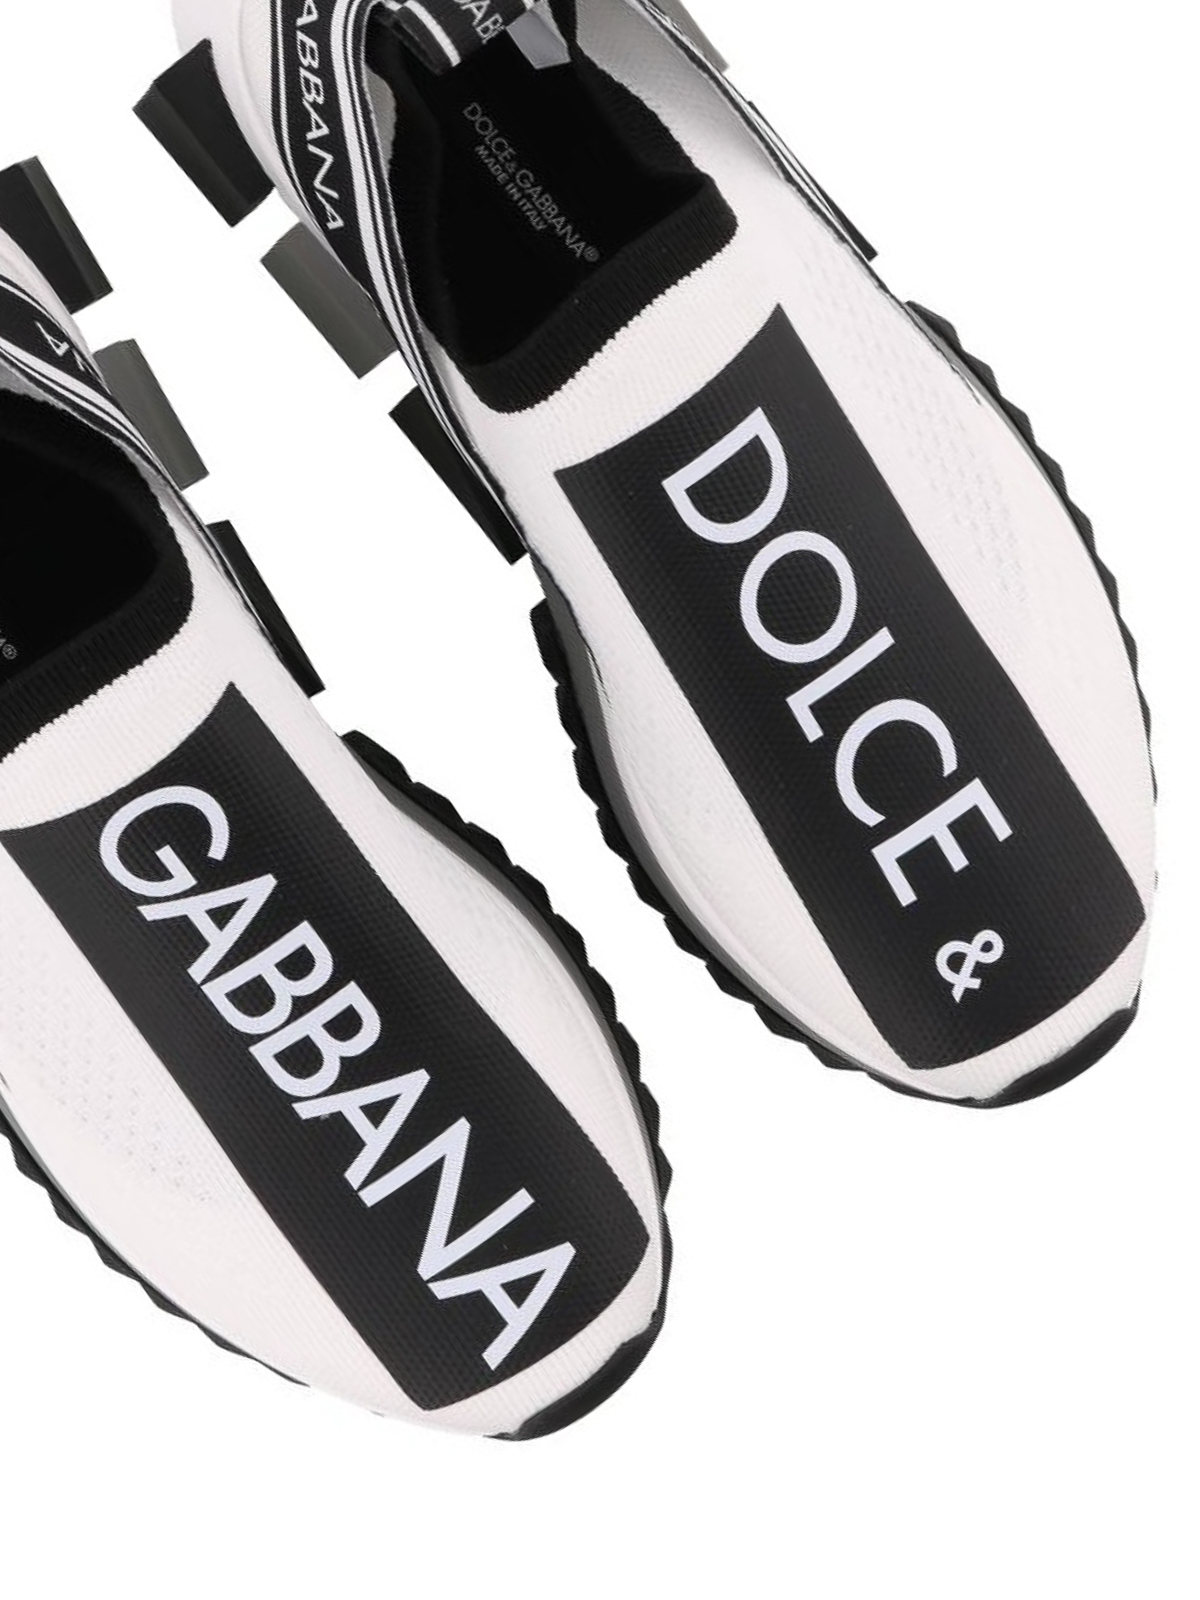 dolce & gabbana branded sorrento sneakers